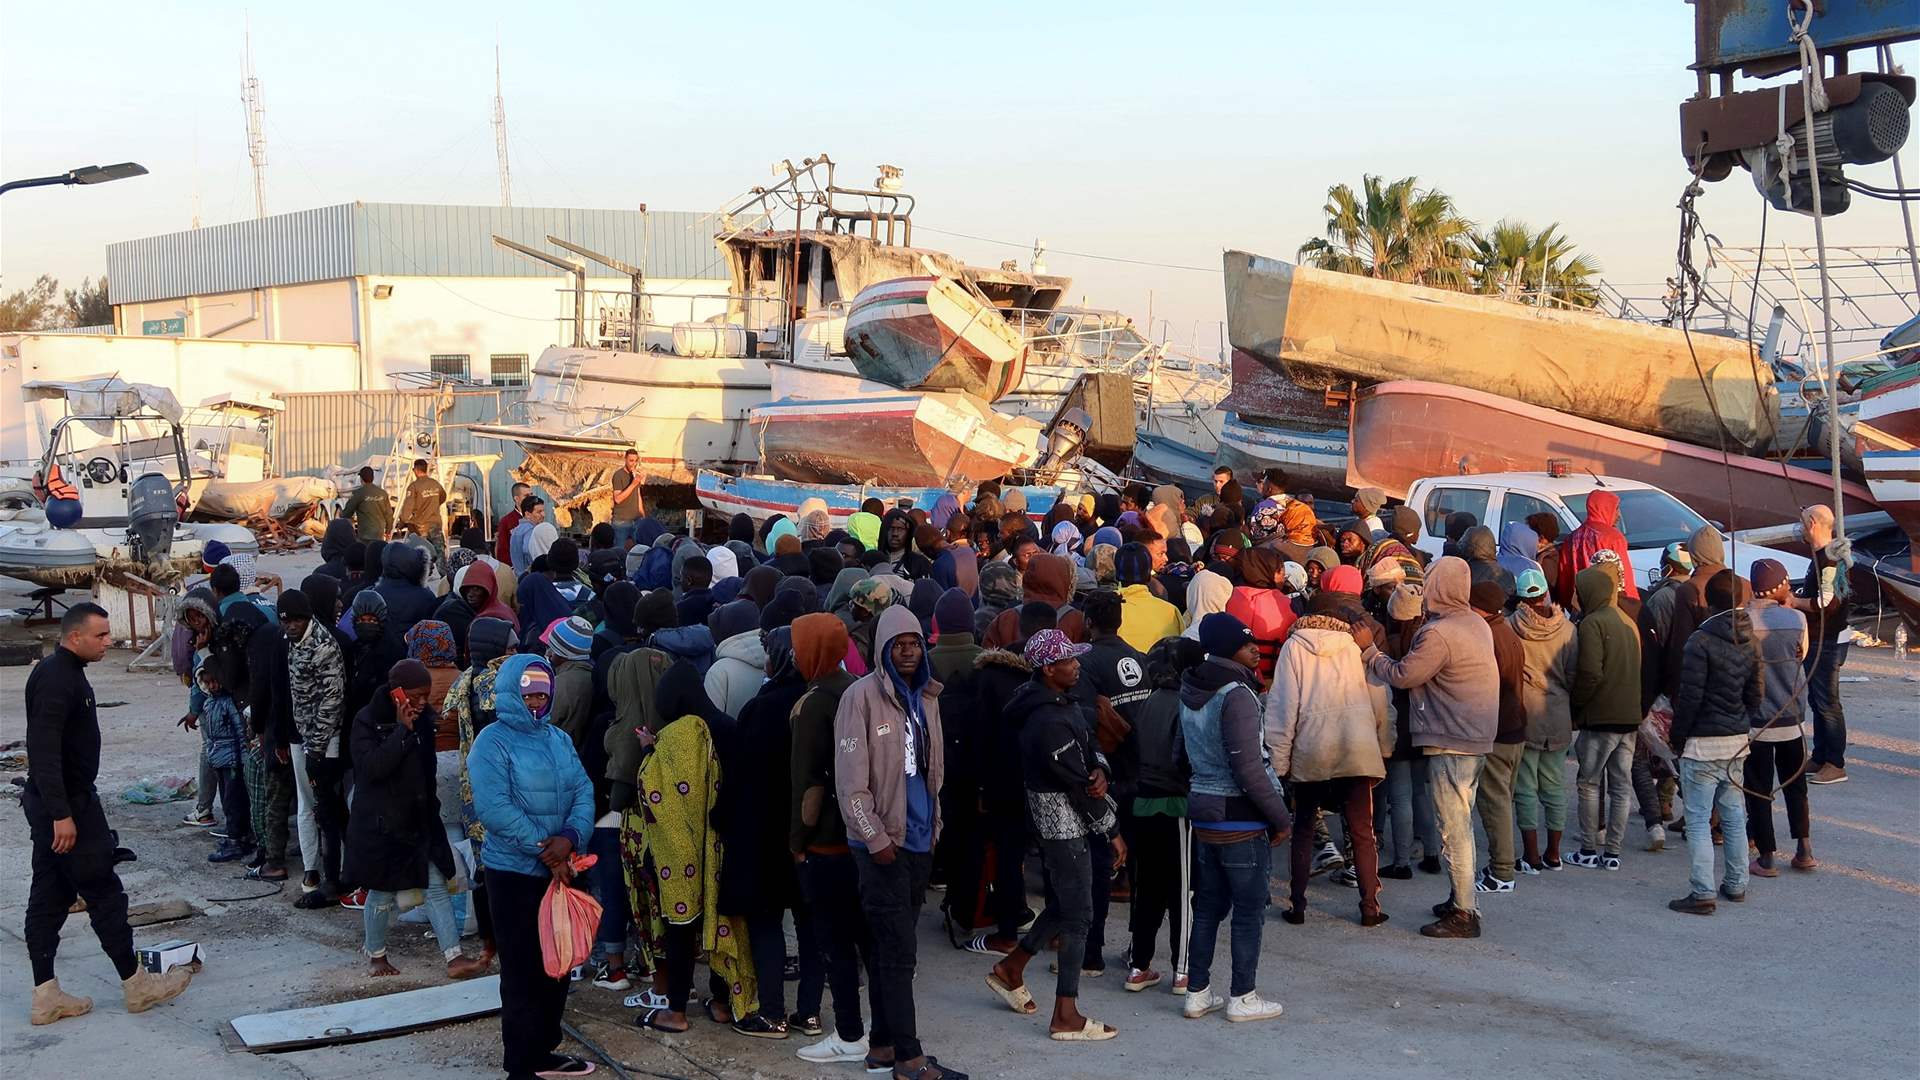 مقتل تونسي في صدامات مع مهاجرين في مدينة صفاقس